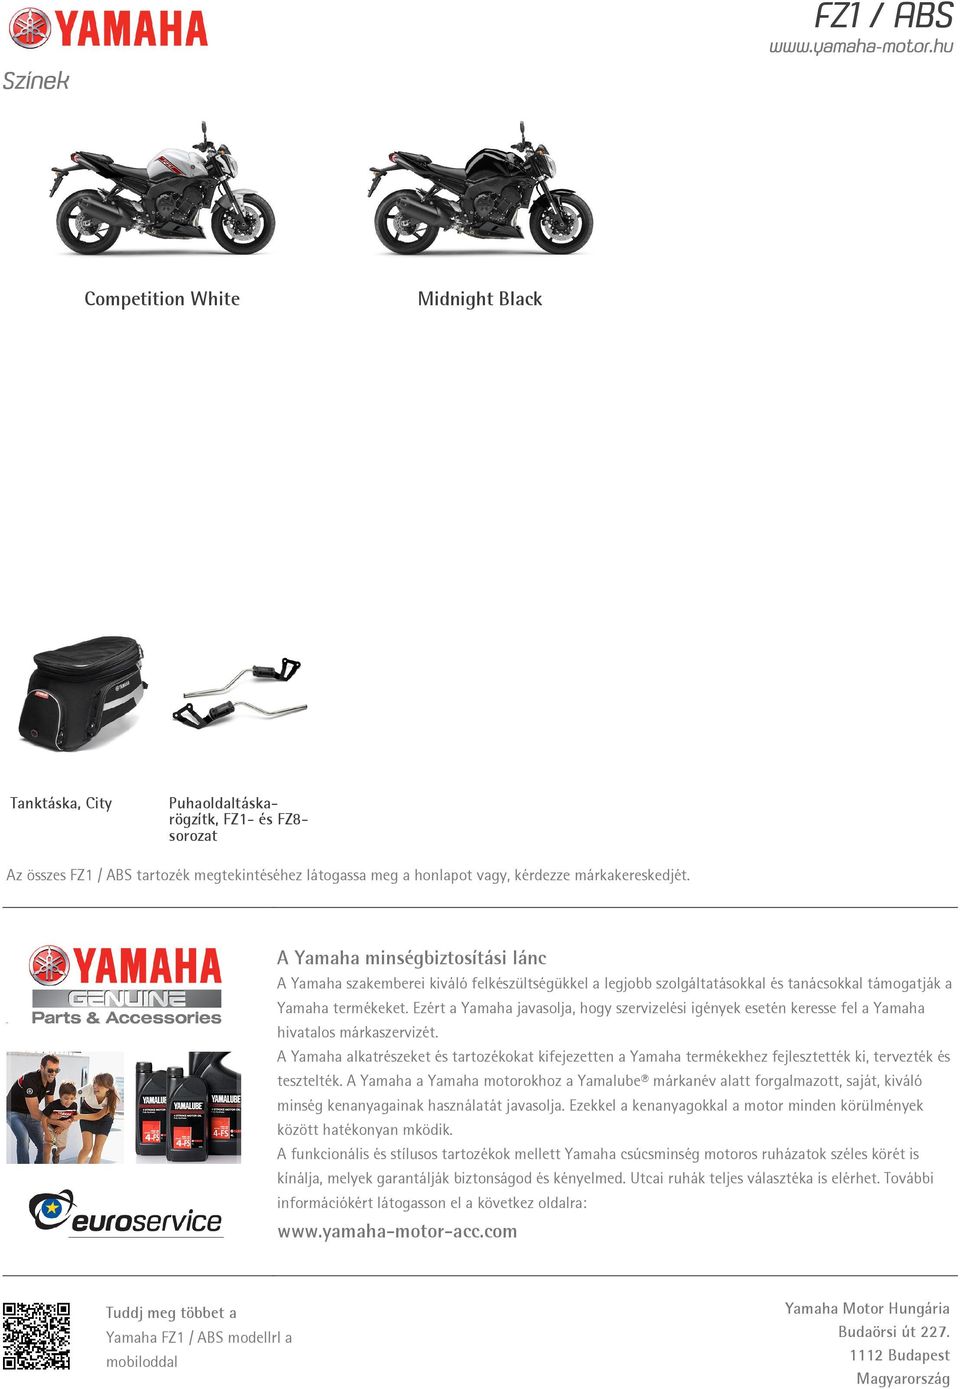 Ezért a Yamaha javasolja, hogy szervizelési igények esetén keresse fel a Yamaha hivatalos márkaszervizét.